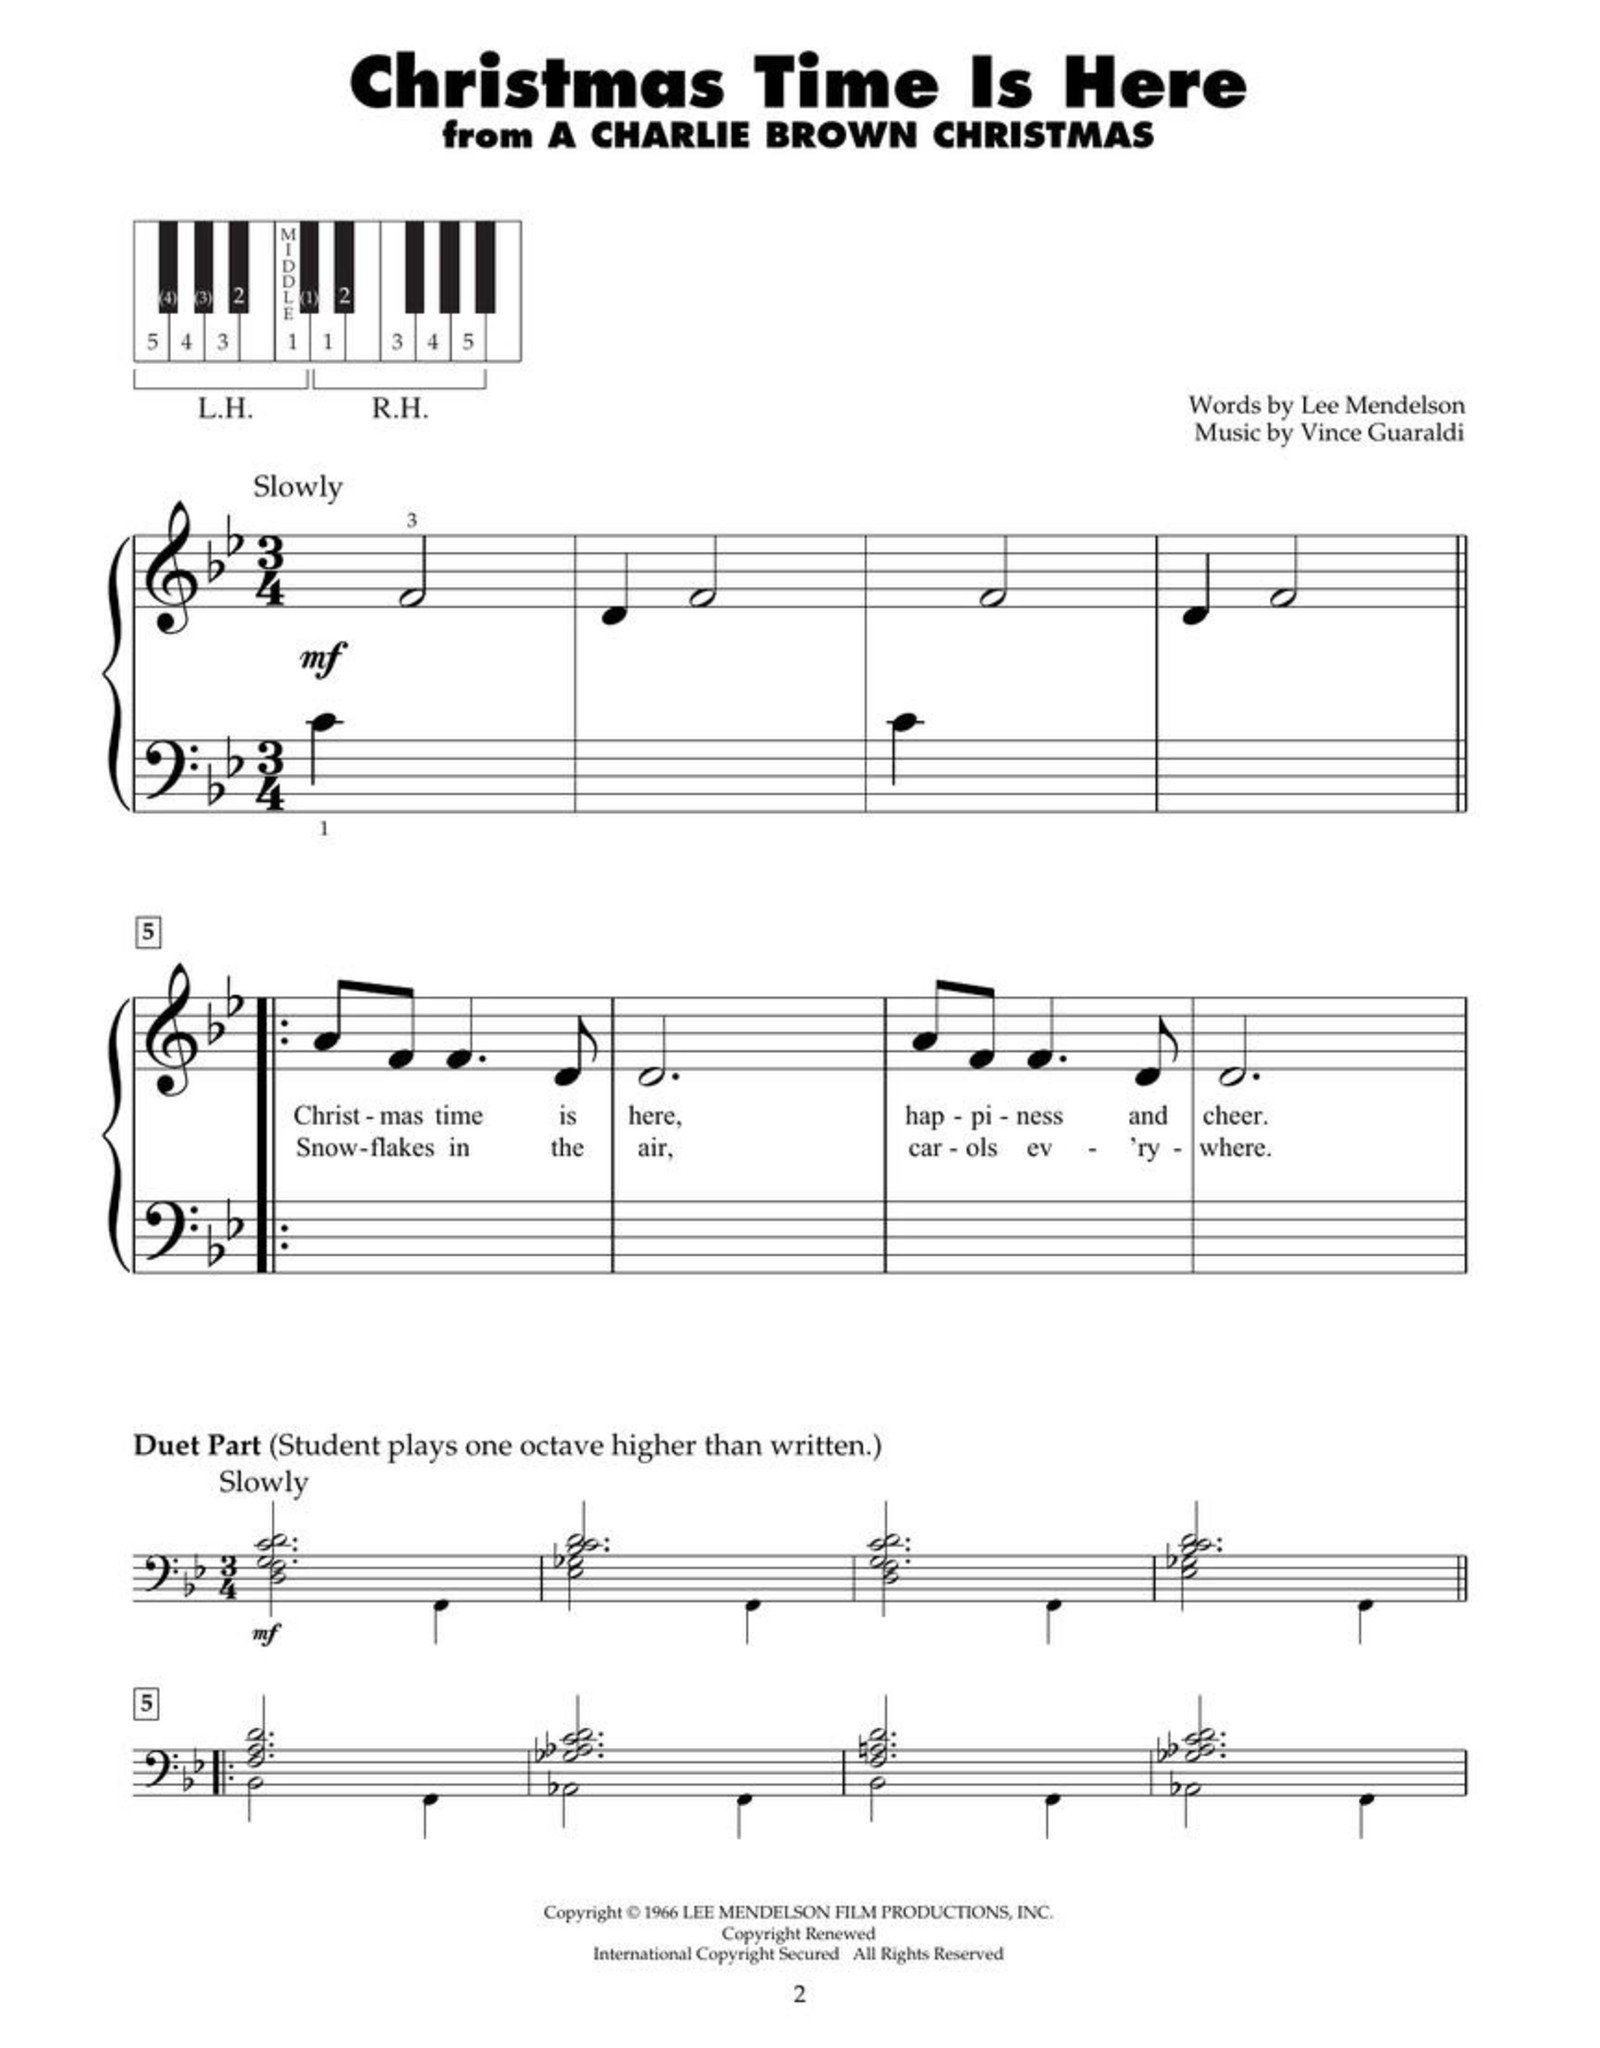 Hal Leonard Favorite Christmas Songs for Five-Finger (5-Finger) Piano